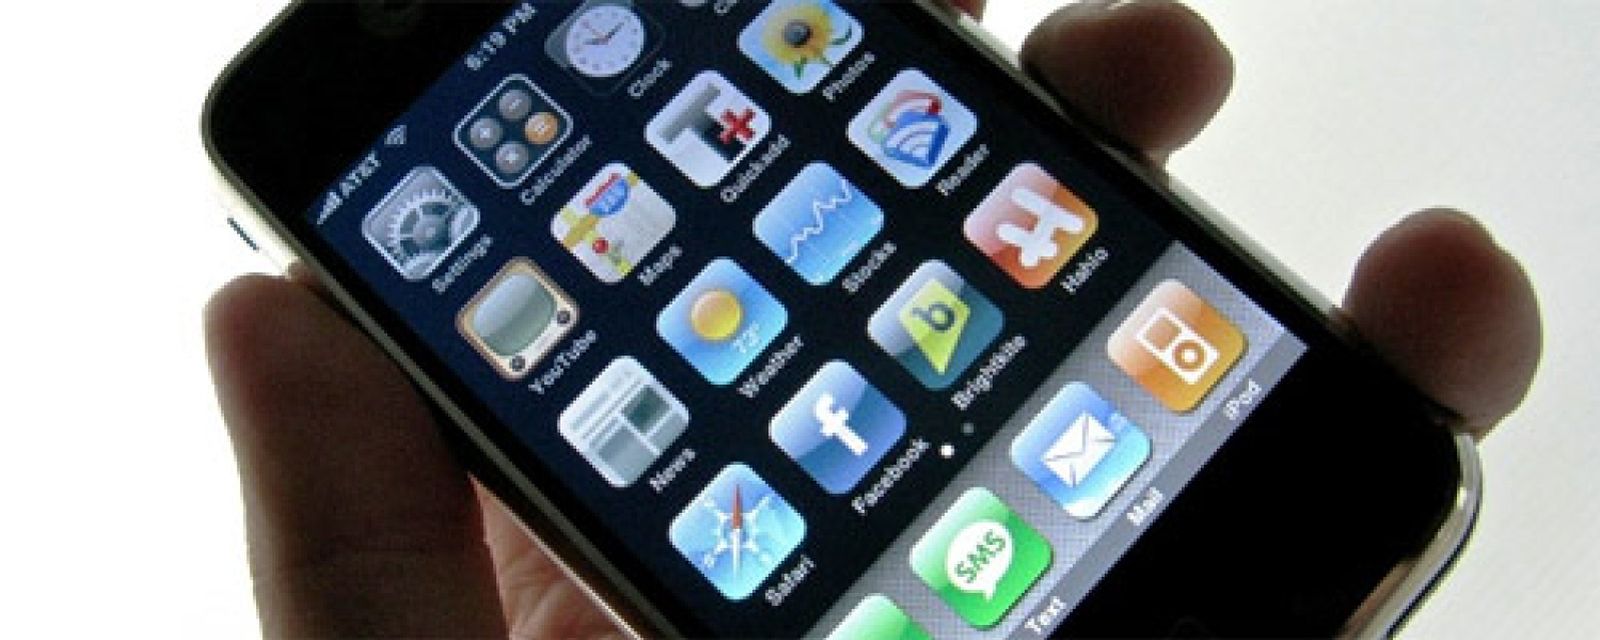 Foto: Samsung tenía una guía para imitar las características del iPhone